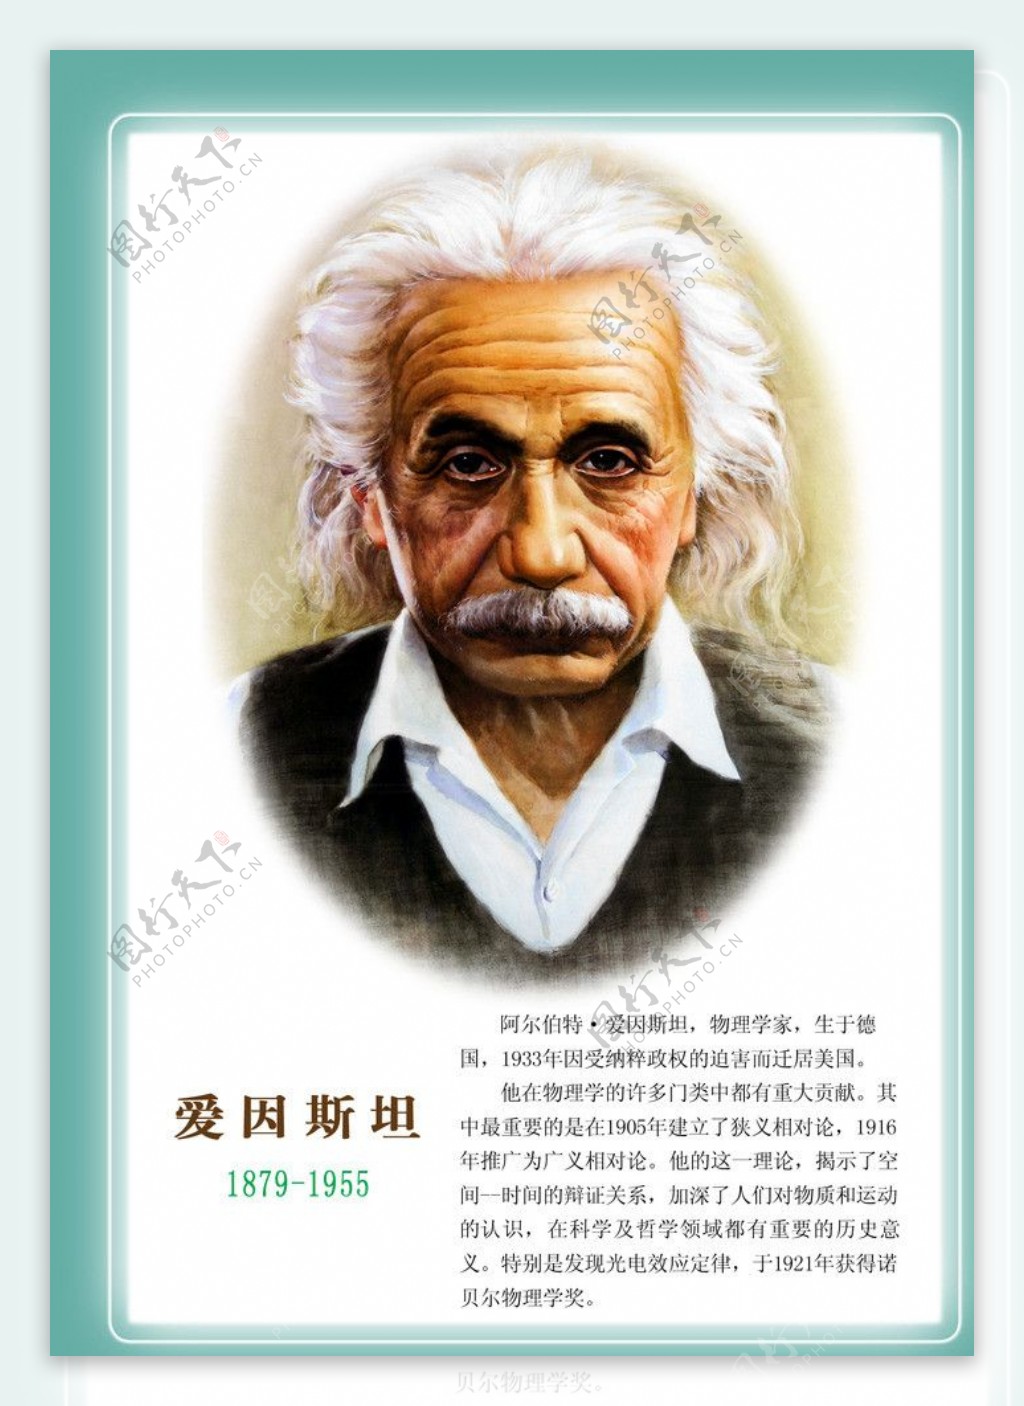 最伟大的科学家_20世纪伟大的科学家爱因斯坦 演讲稿 我的信仰(2)_排行榜